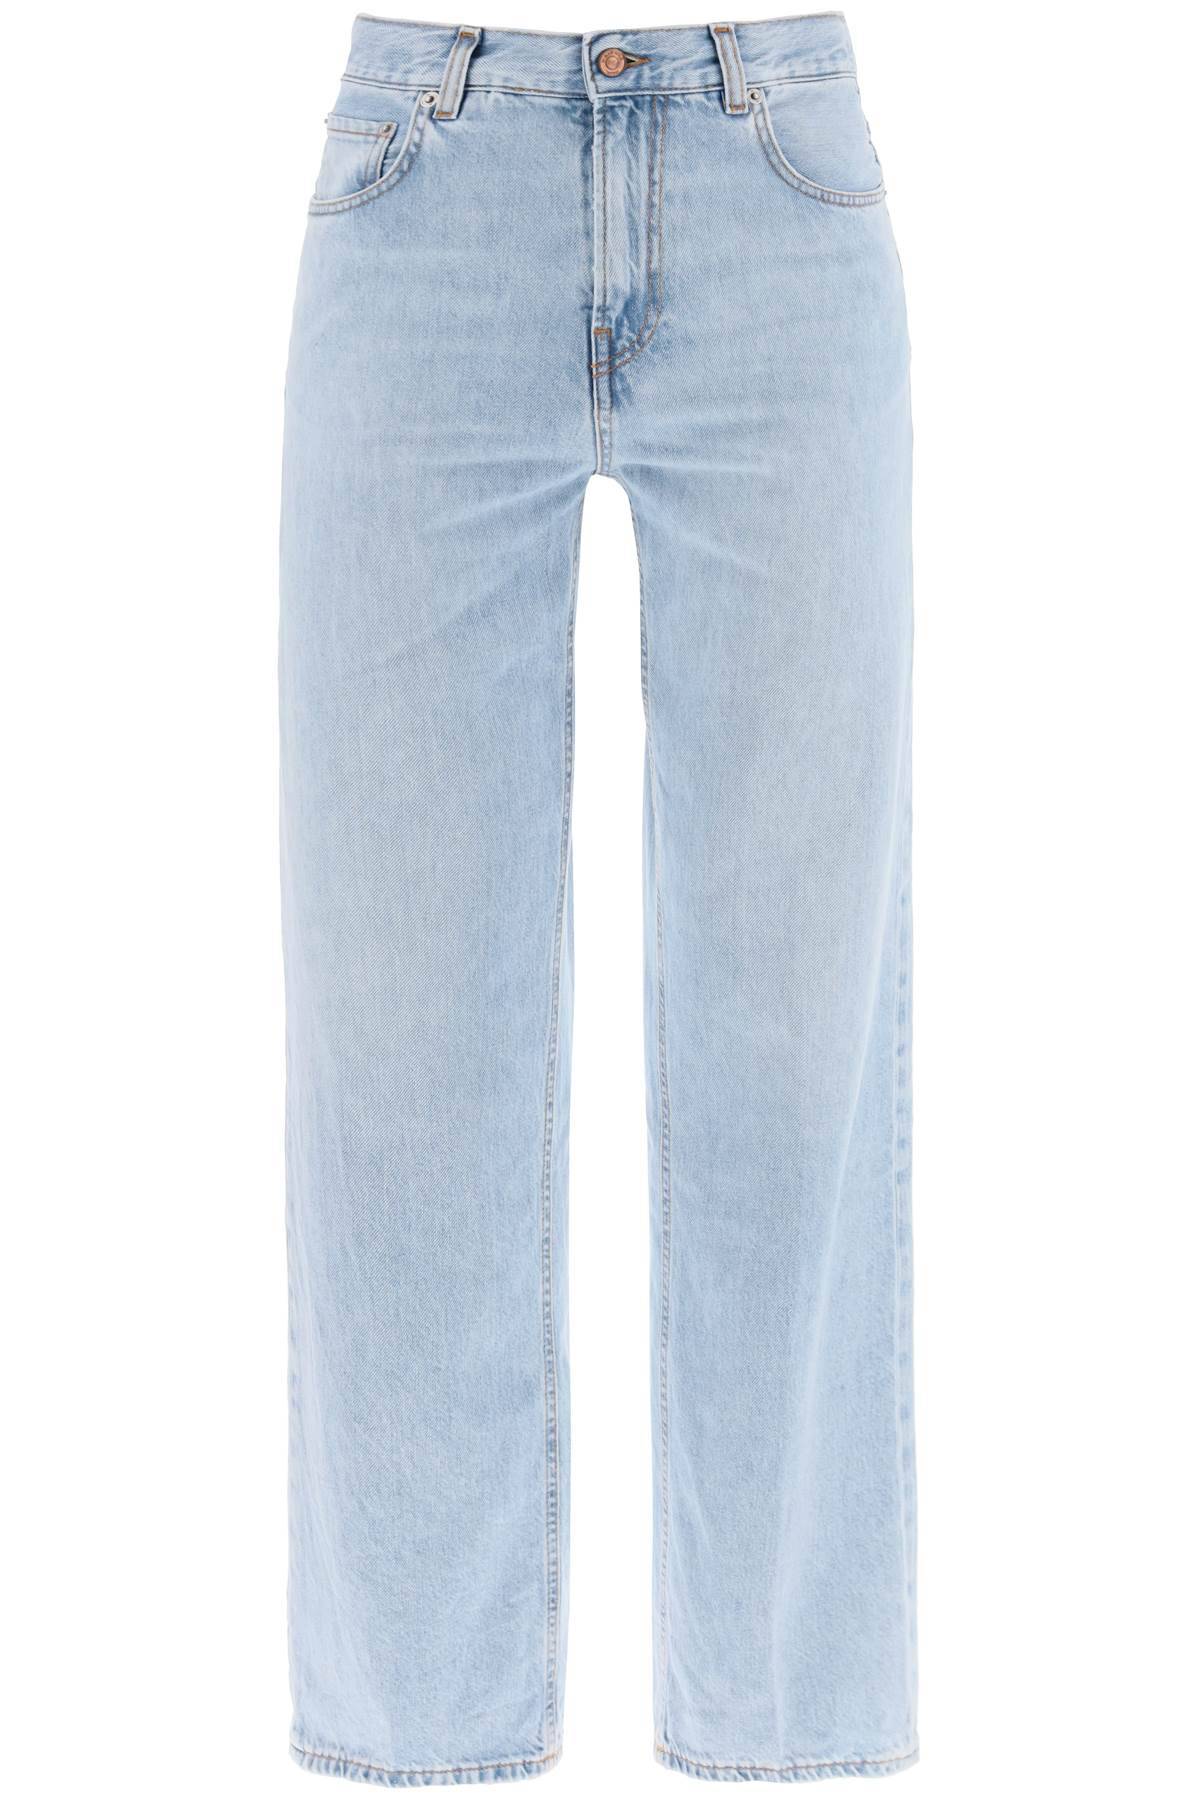 HAIKURE HAIKURE bonnie jeans